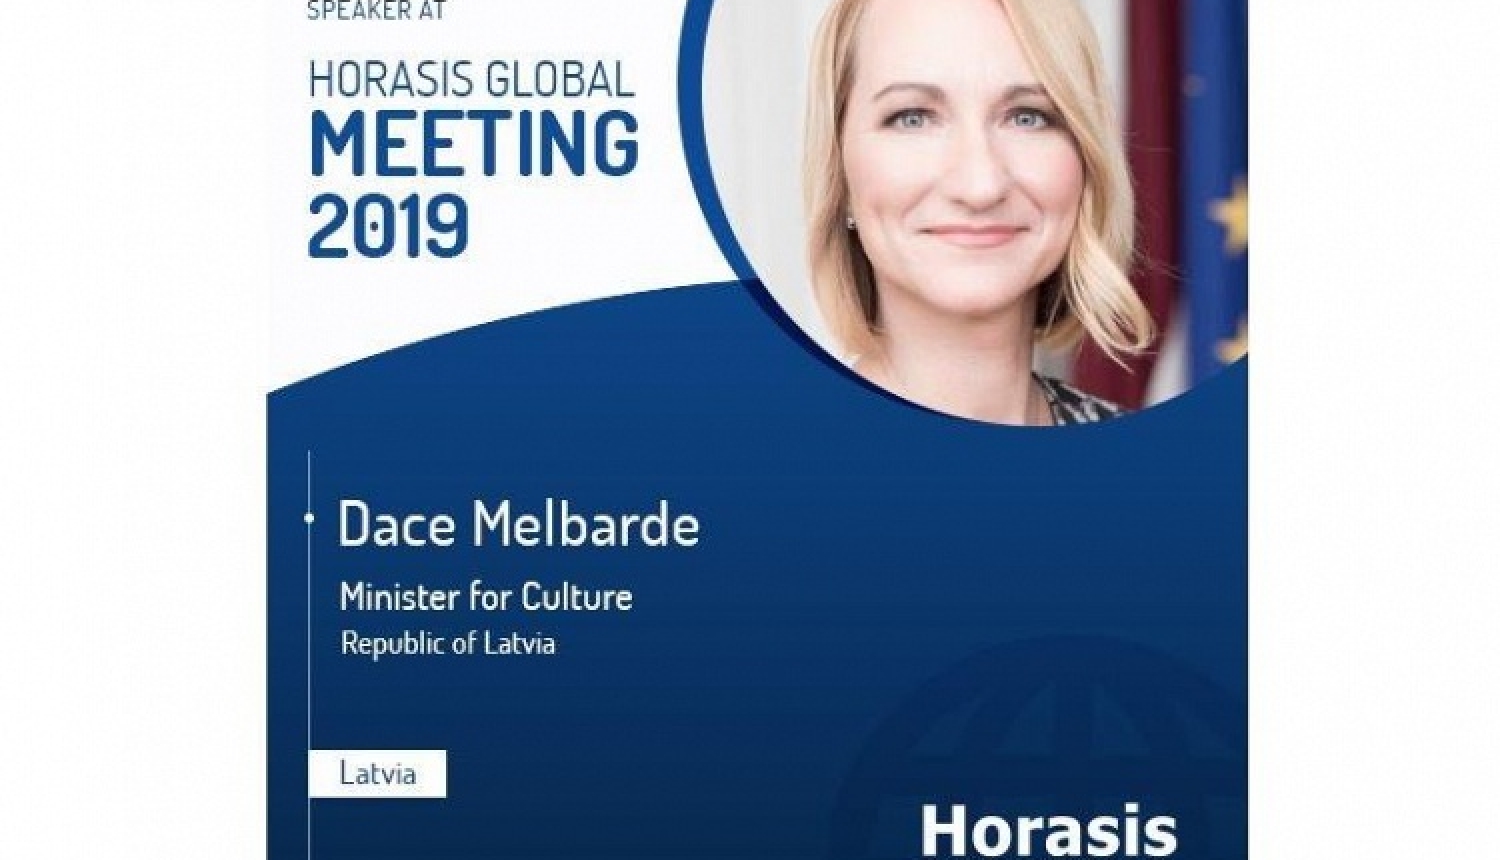 Kultūras ministre Dace Melbārde uzrunās pasaules valstu līderus Horasis globālajā sanāksmē